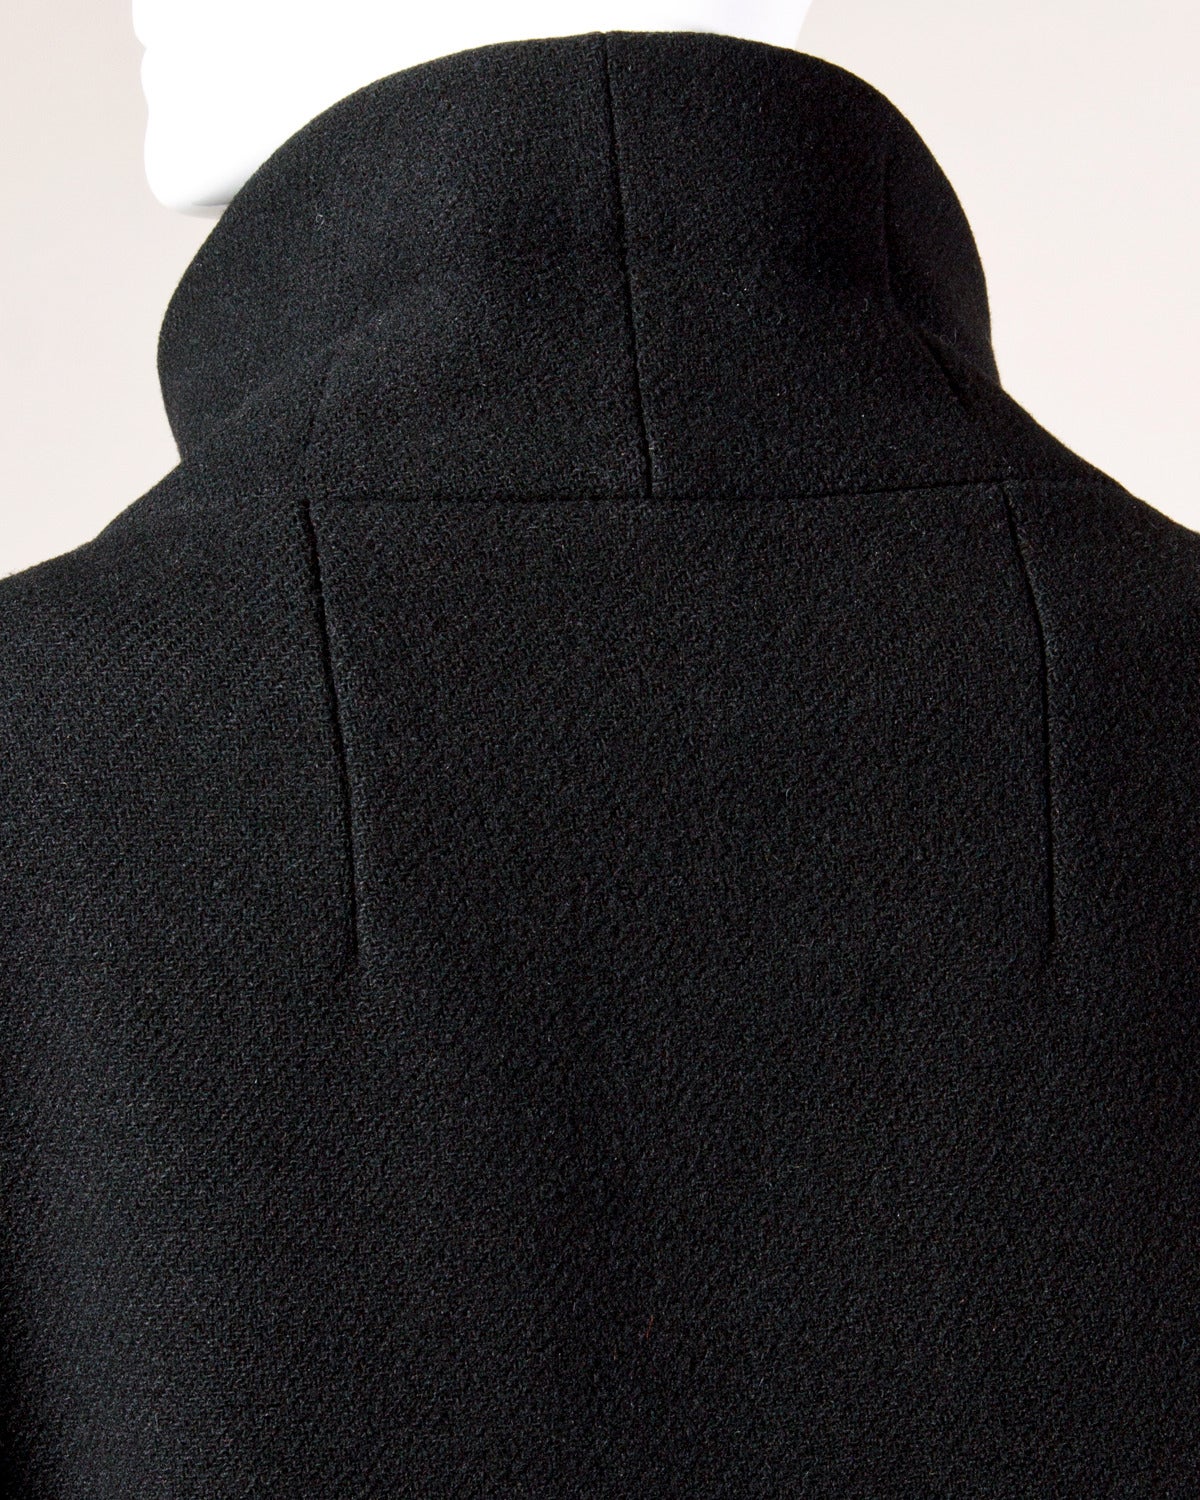 Women's Louis Feraud Vintage 1960s 60s Mod Heavy Black Wool Coat